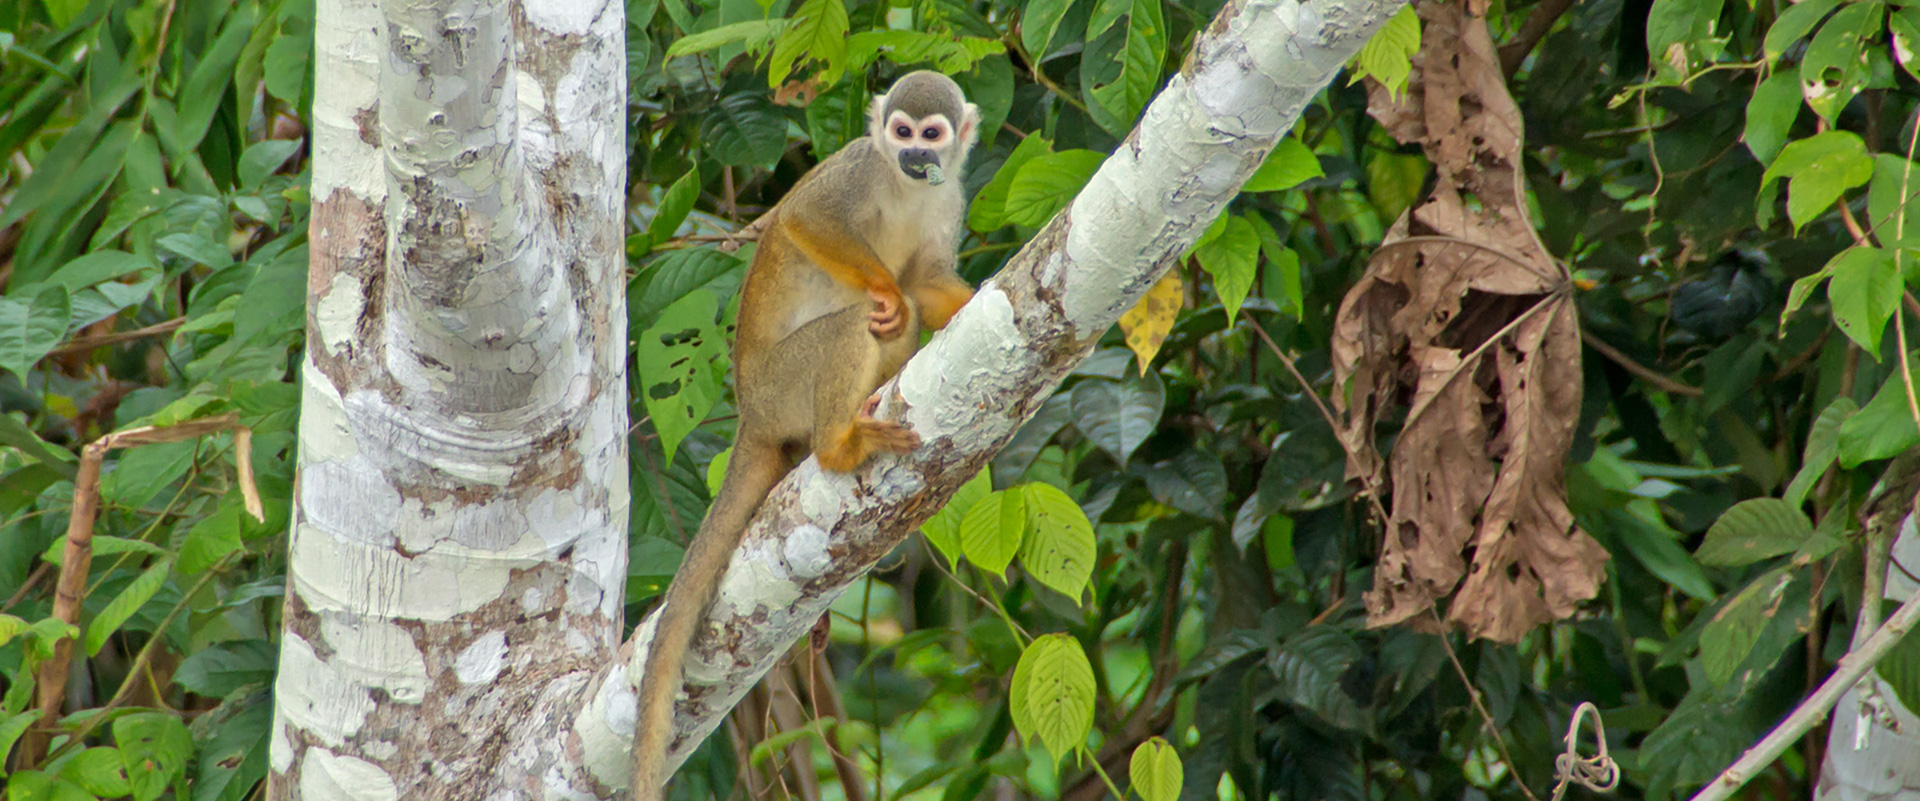 Squirrel Monkey Amazon Ecuador Tours